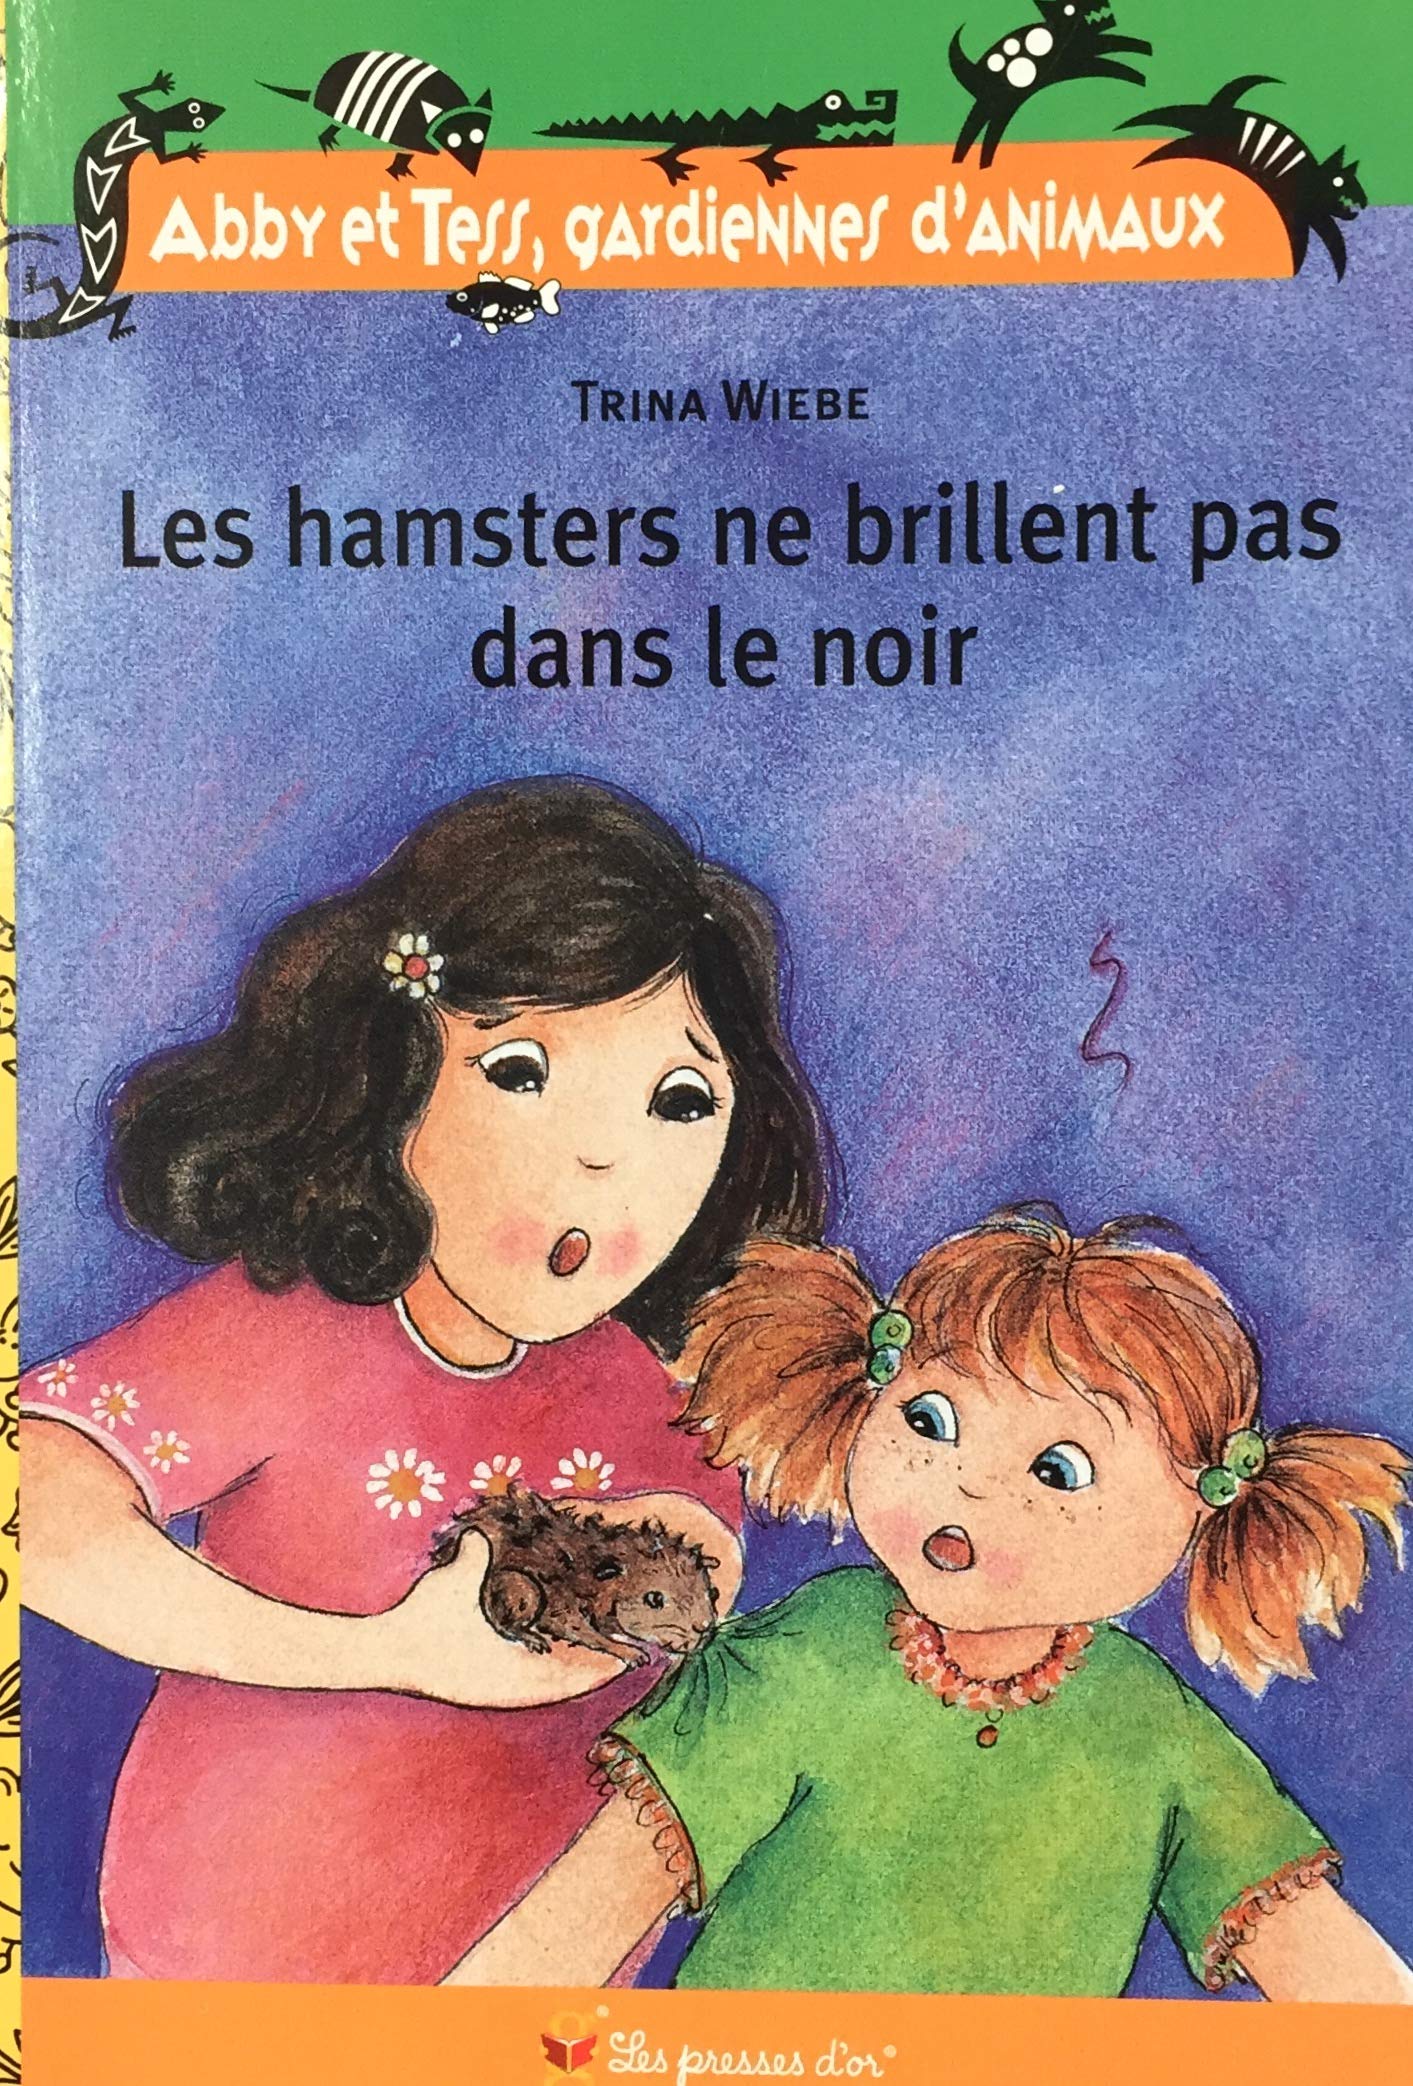 Livre ISBN 1552253910 Abby et Tess, Gardiennes d'Animaux : Les hamsters ne brillent pas dans le noir (Trina Weibe)